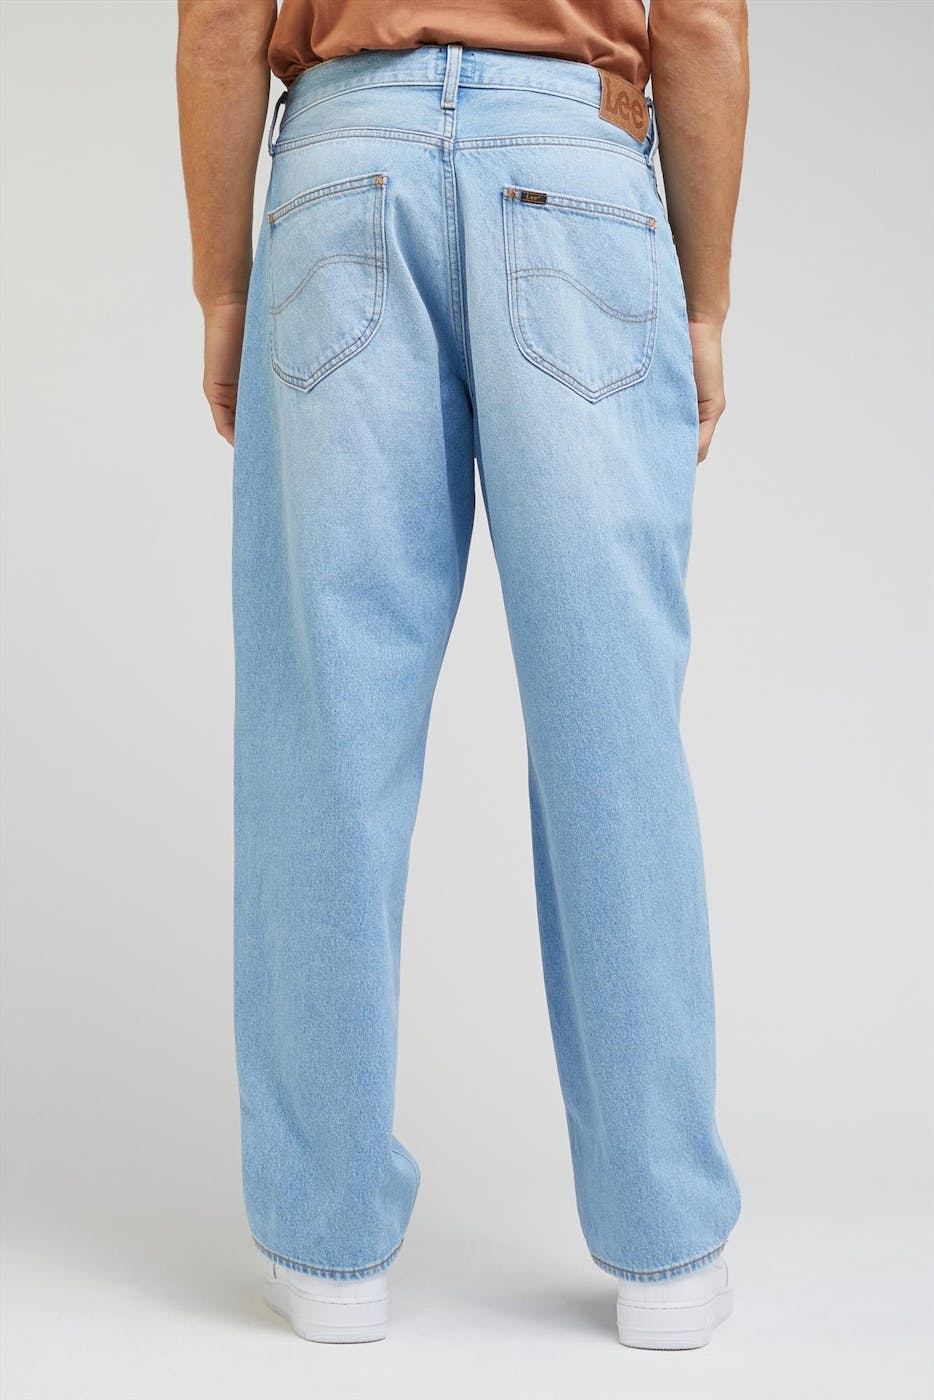 Lee - Helderblauwe Asher Loose Straight jeans